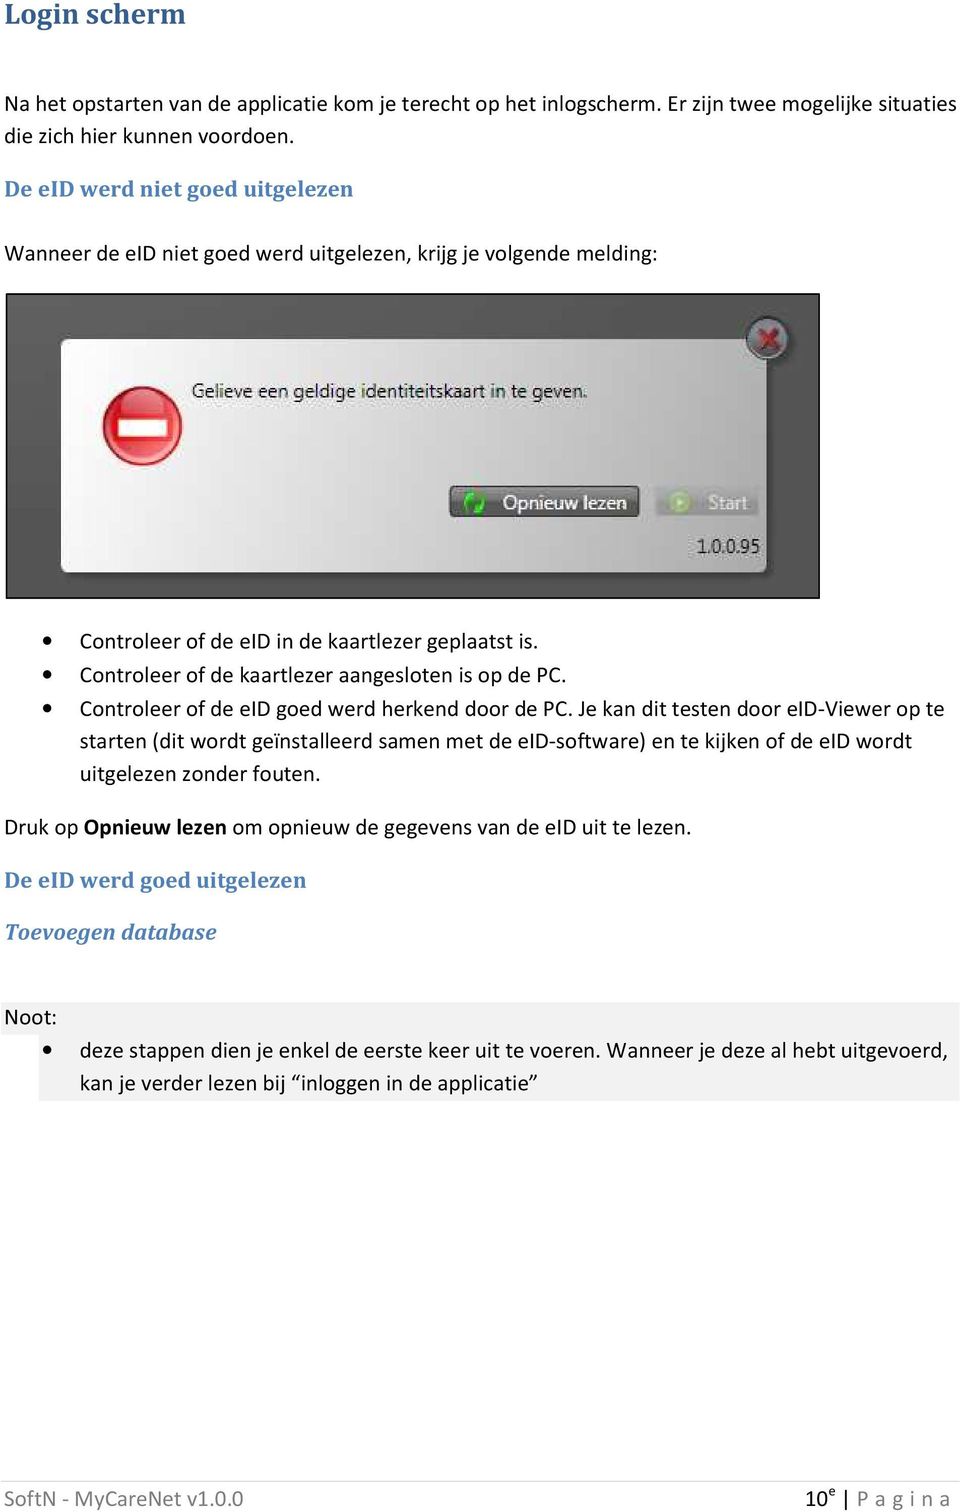 Controleer of de kaartlezer aangesloten is op de PC. Controleer of de eid goed werd herkend door de PC.